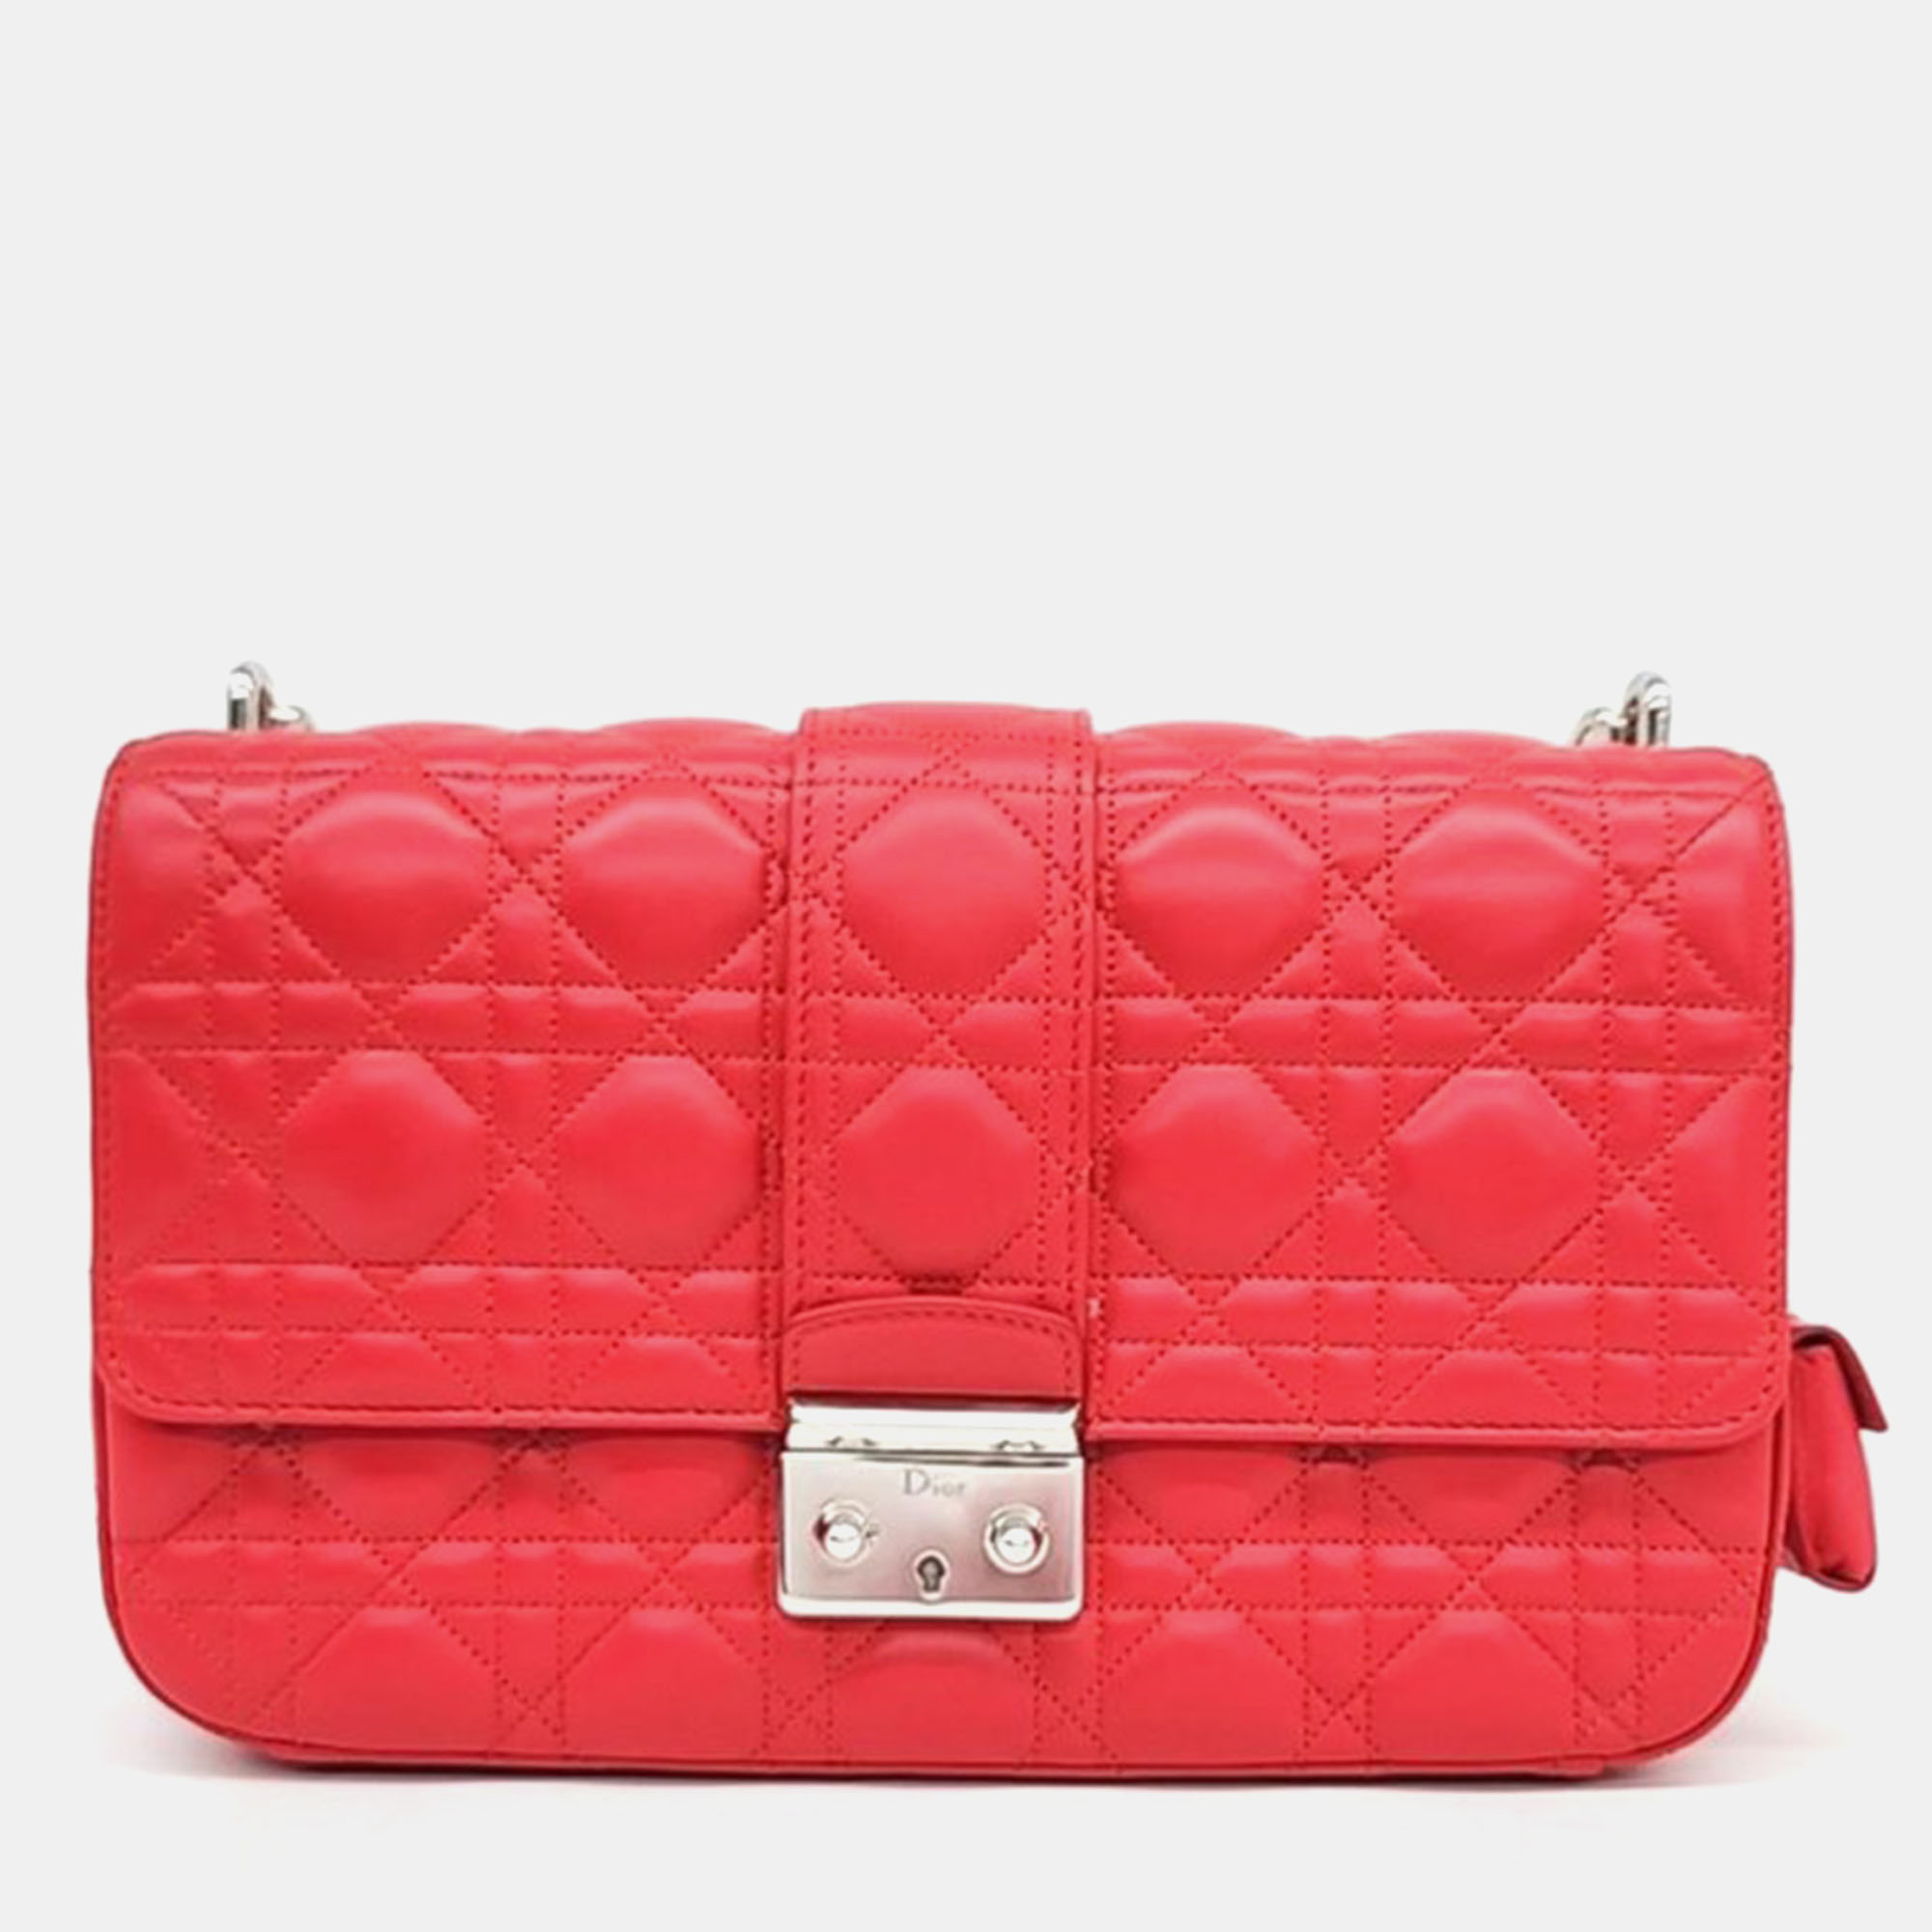 Dior pink cannage leather miss dior shoulder bag